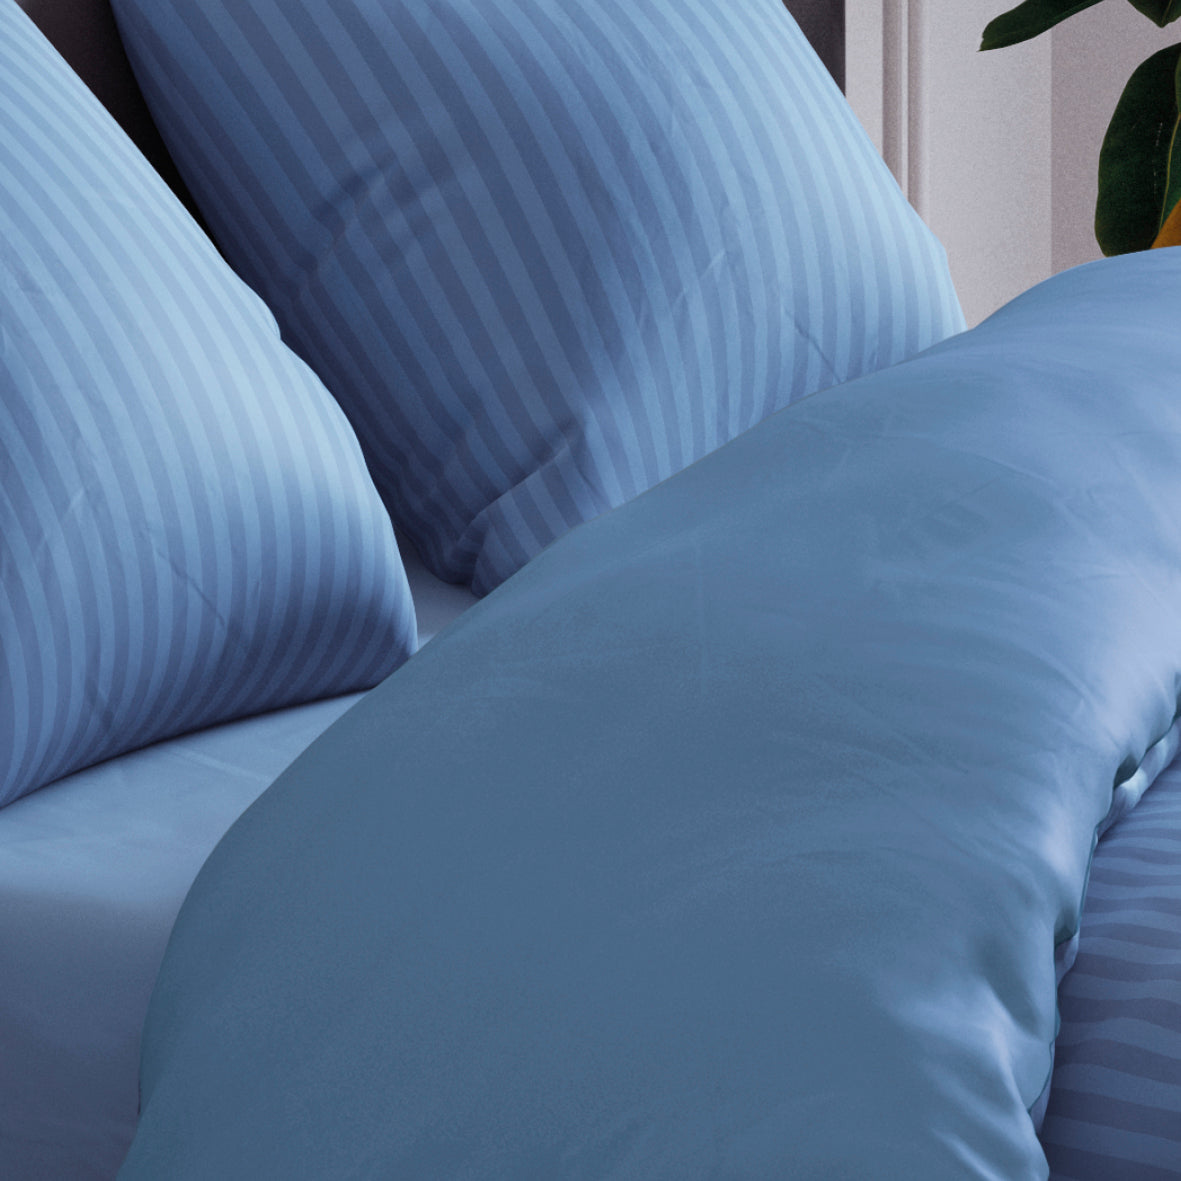 Pillowcase(s) in cotton satin - Dobby stripe blue